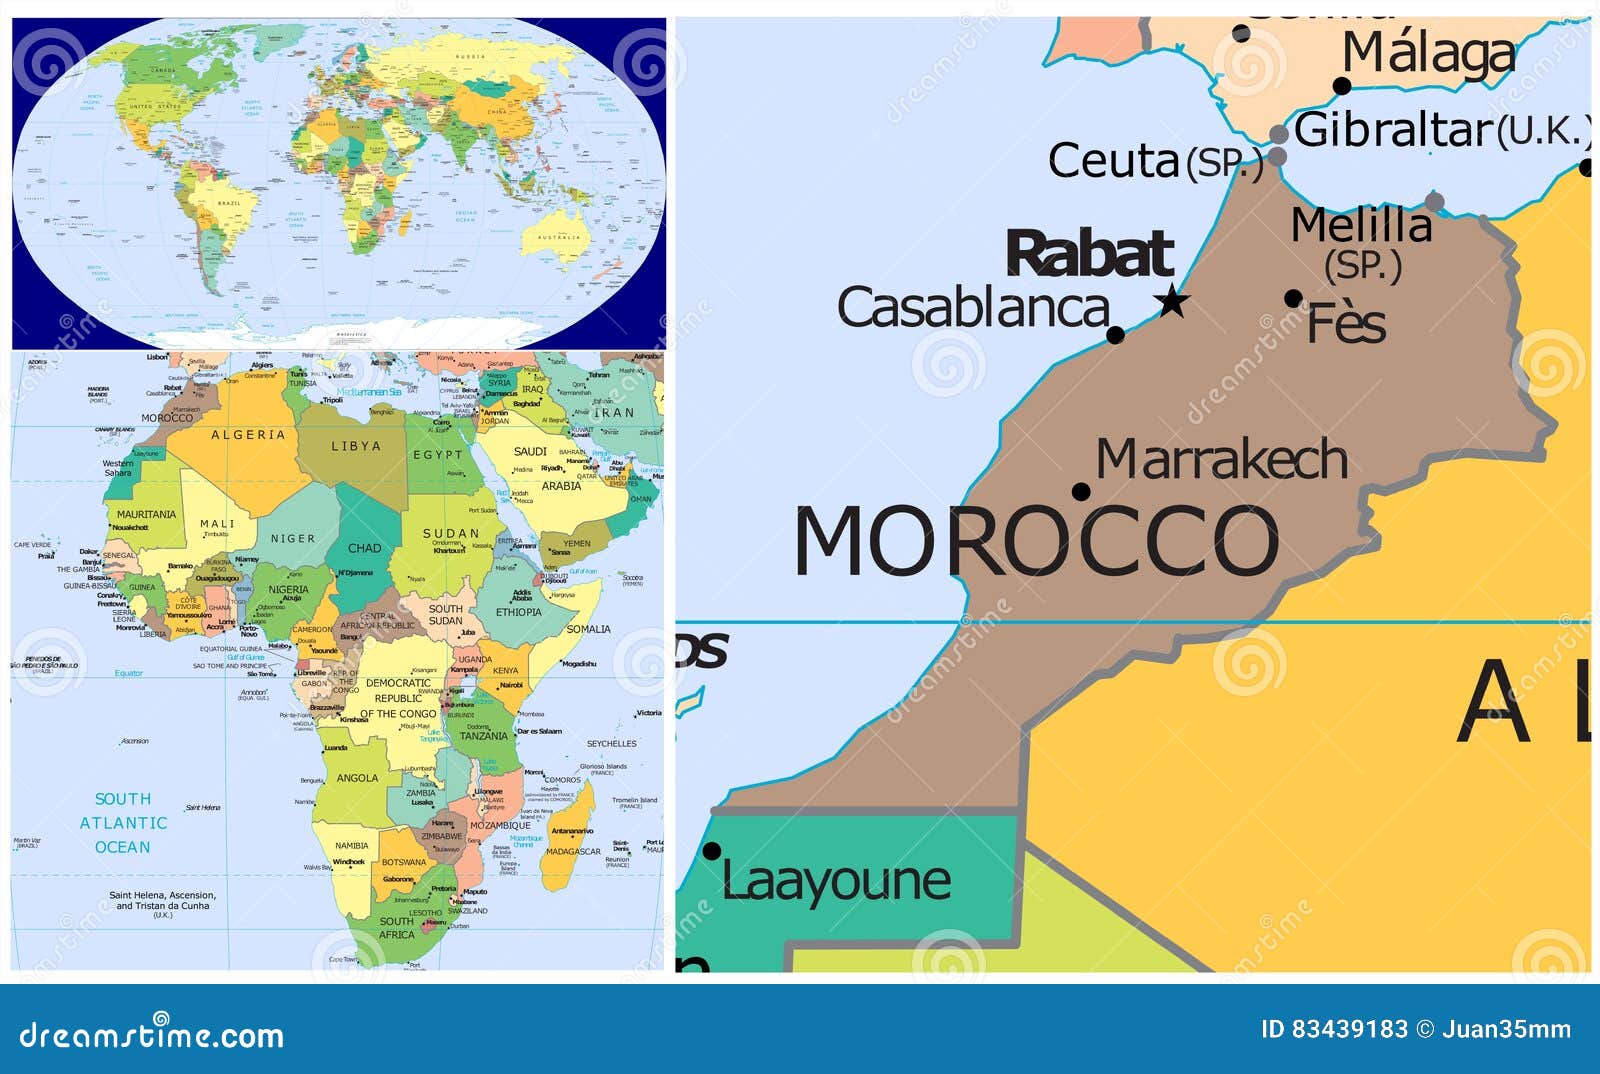 Que idioma se habla en marruecos